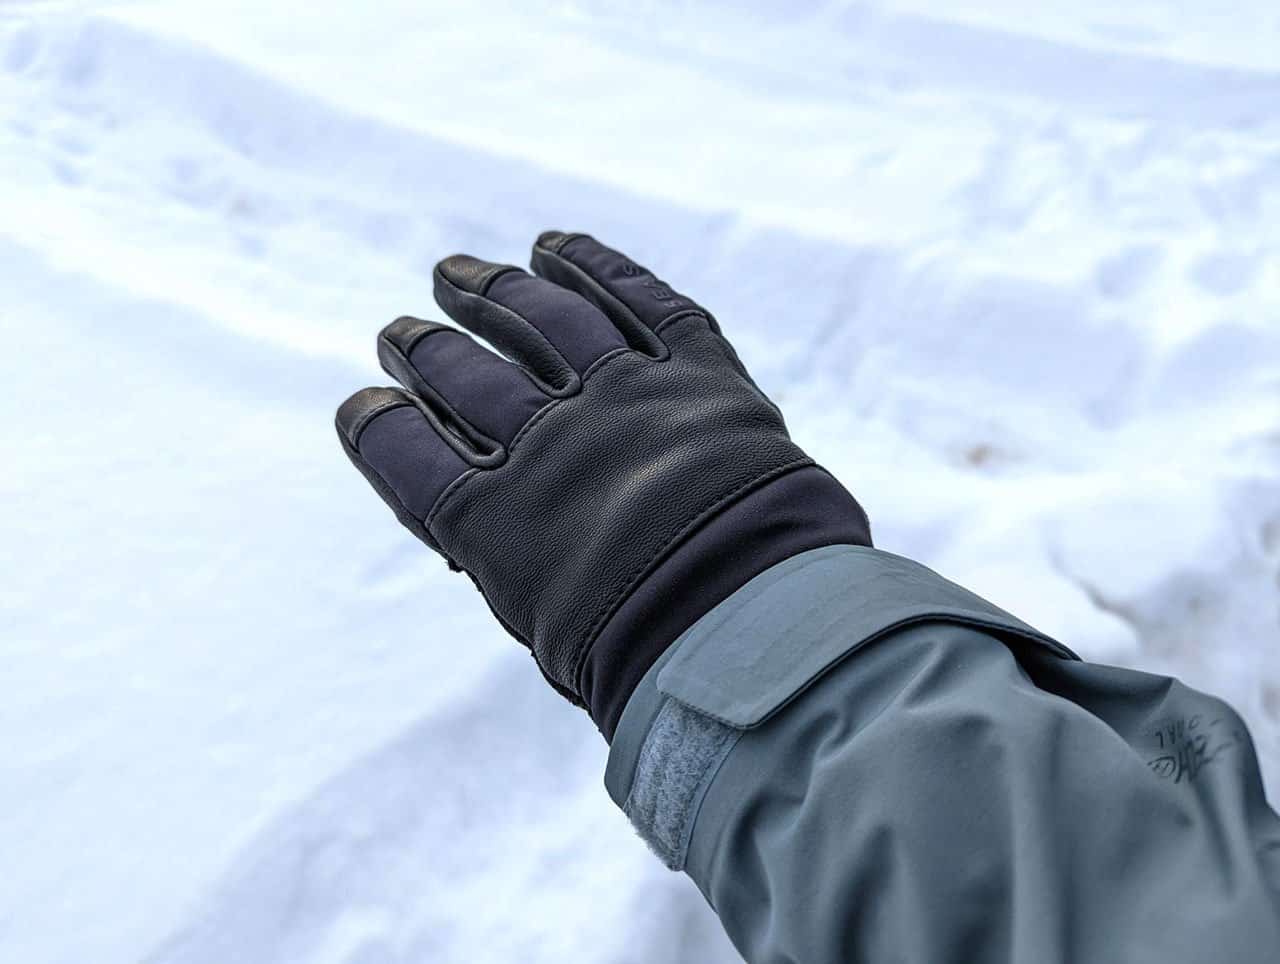 Sealskinz waterproof gloves